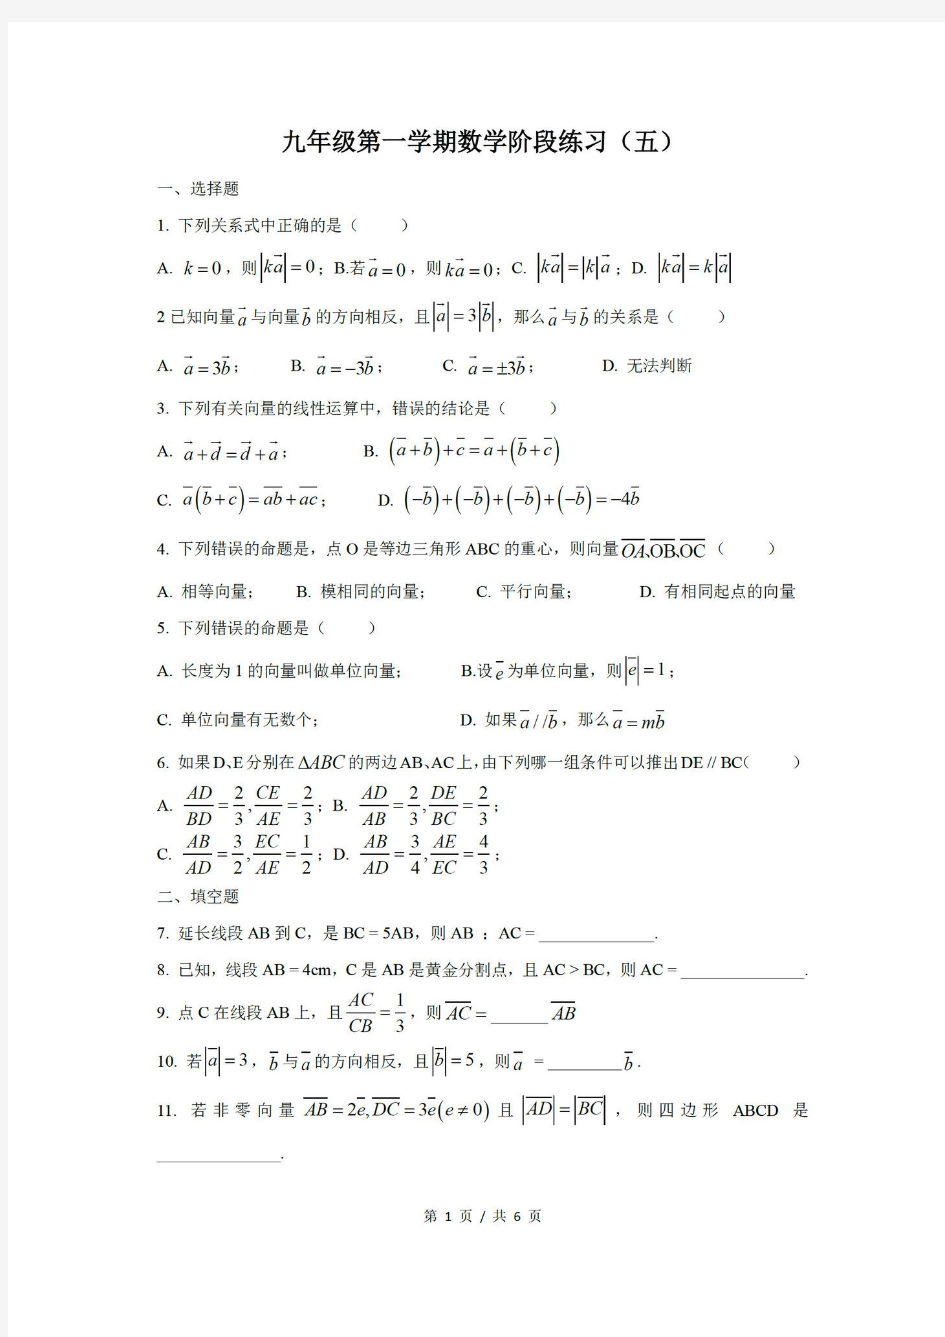 上海市市北初级中学2019年初三上学期数学10份《相似三角形》单元练习卷